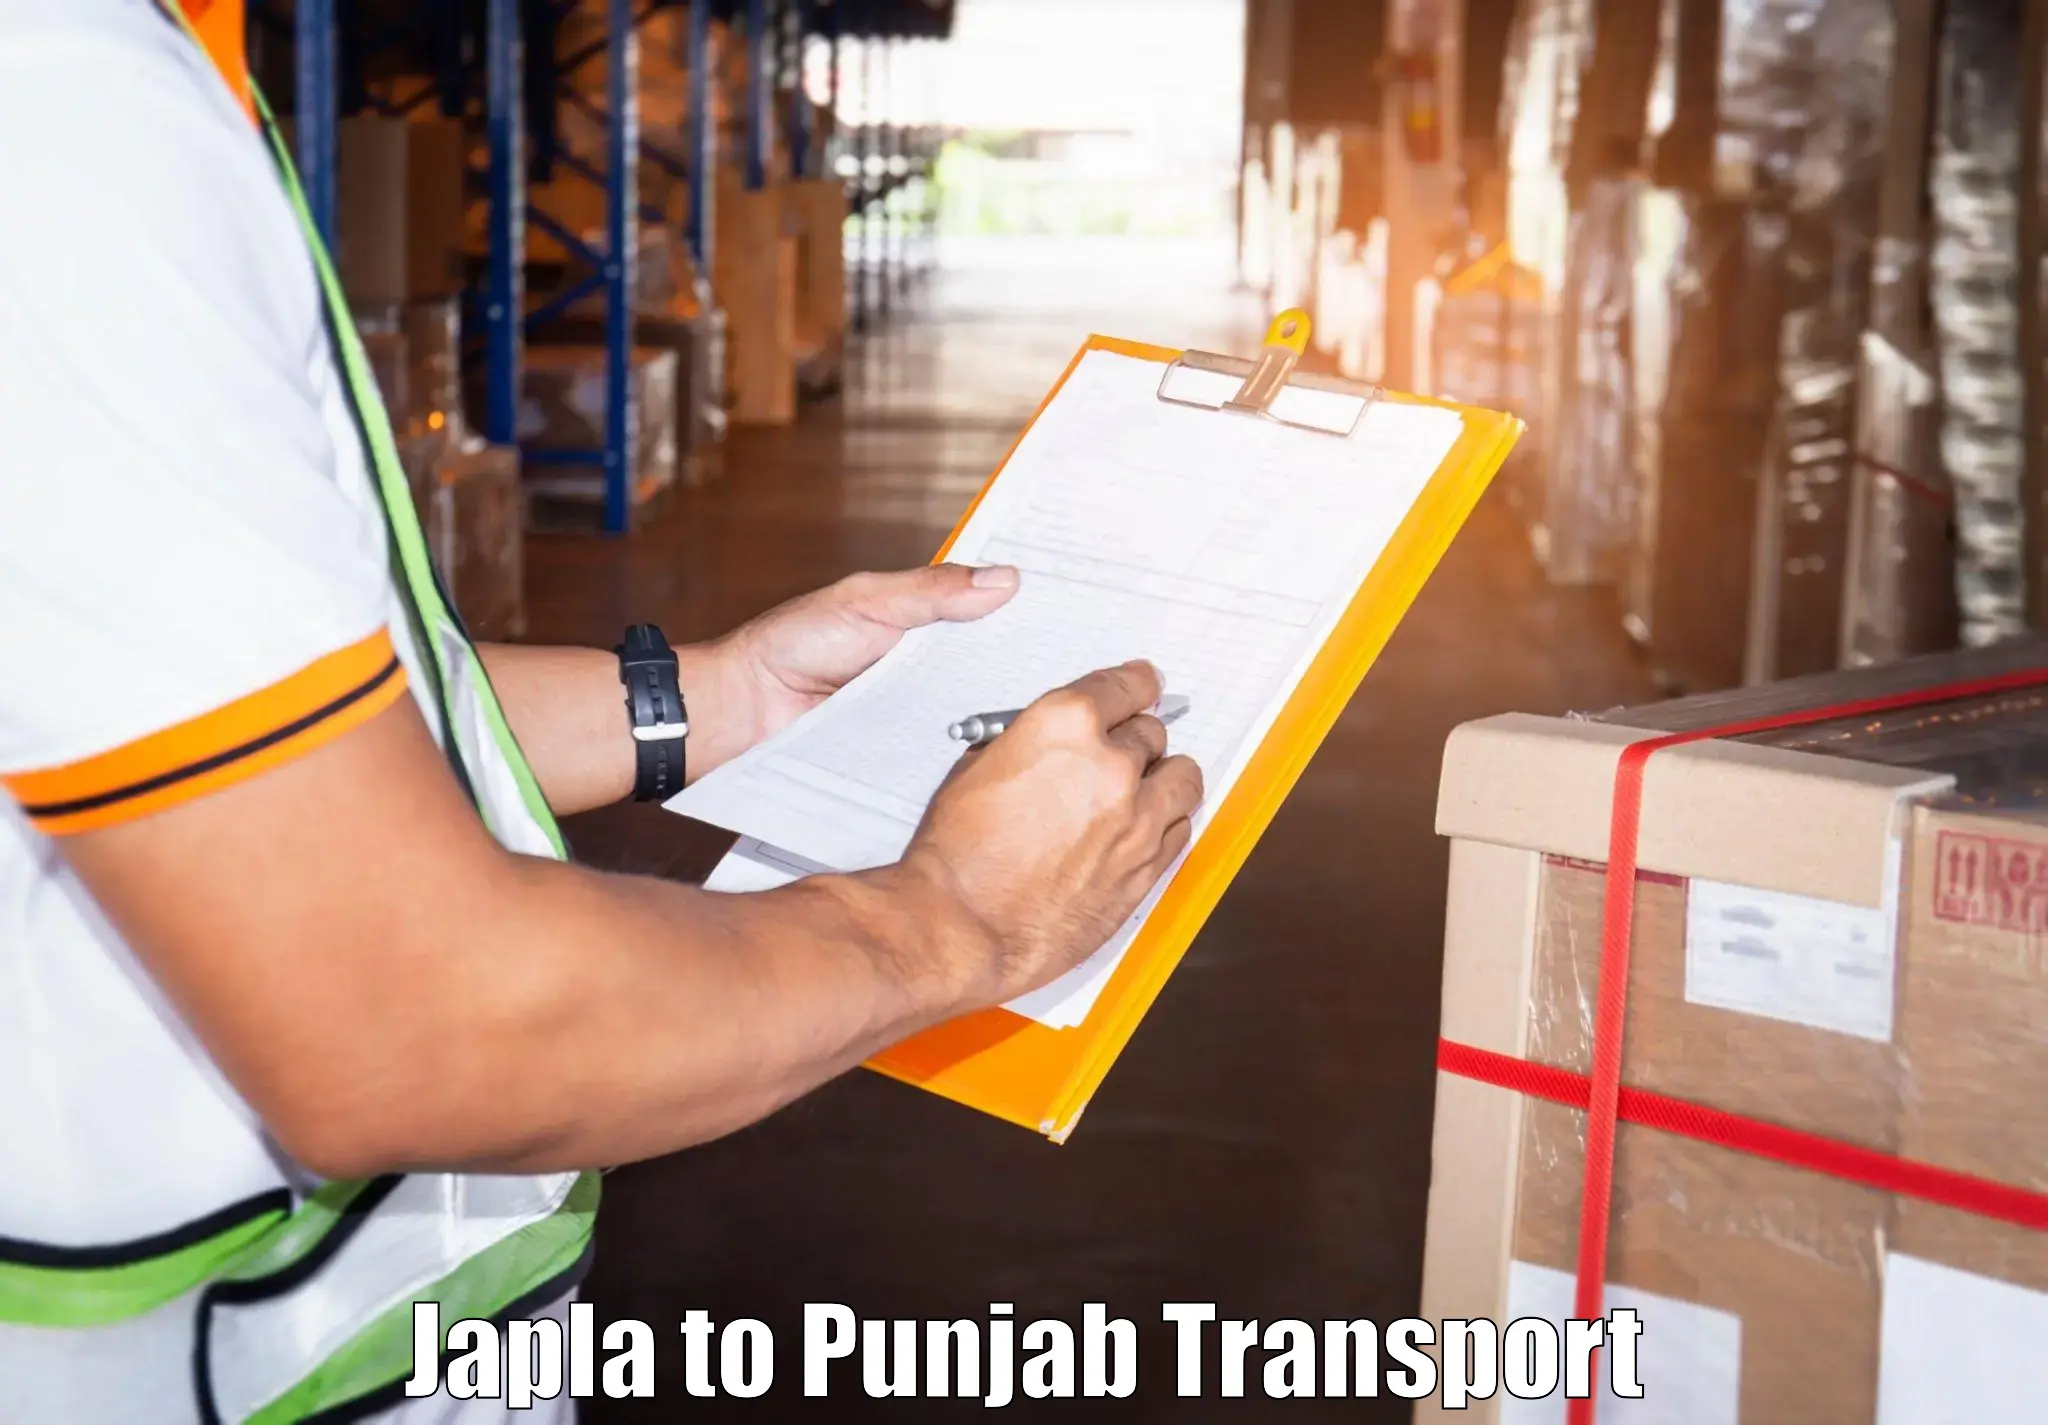 Commercial transport service Japla to Kotkapura